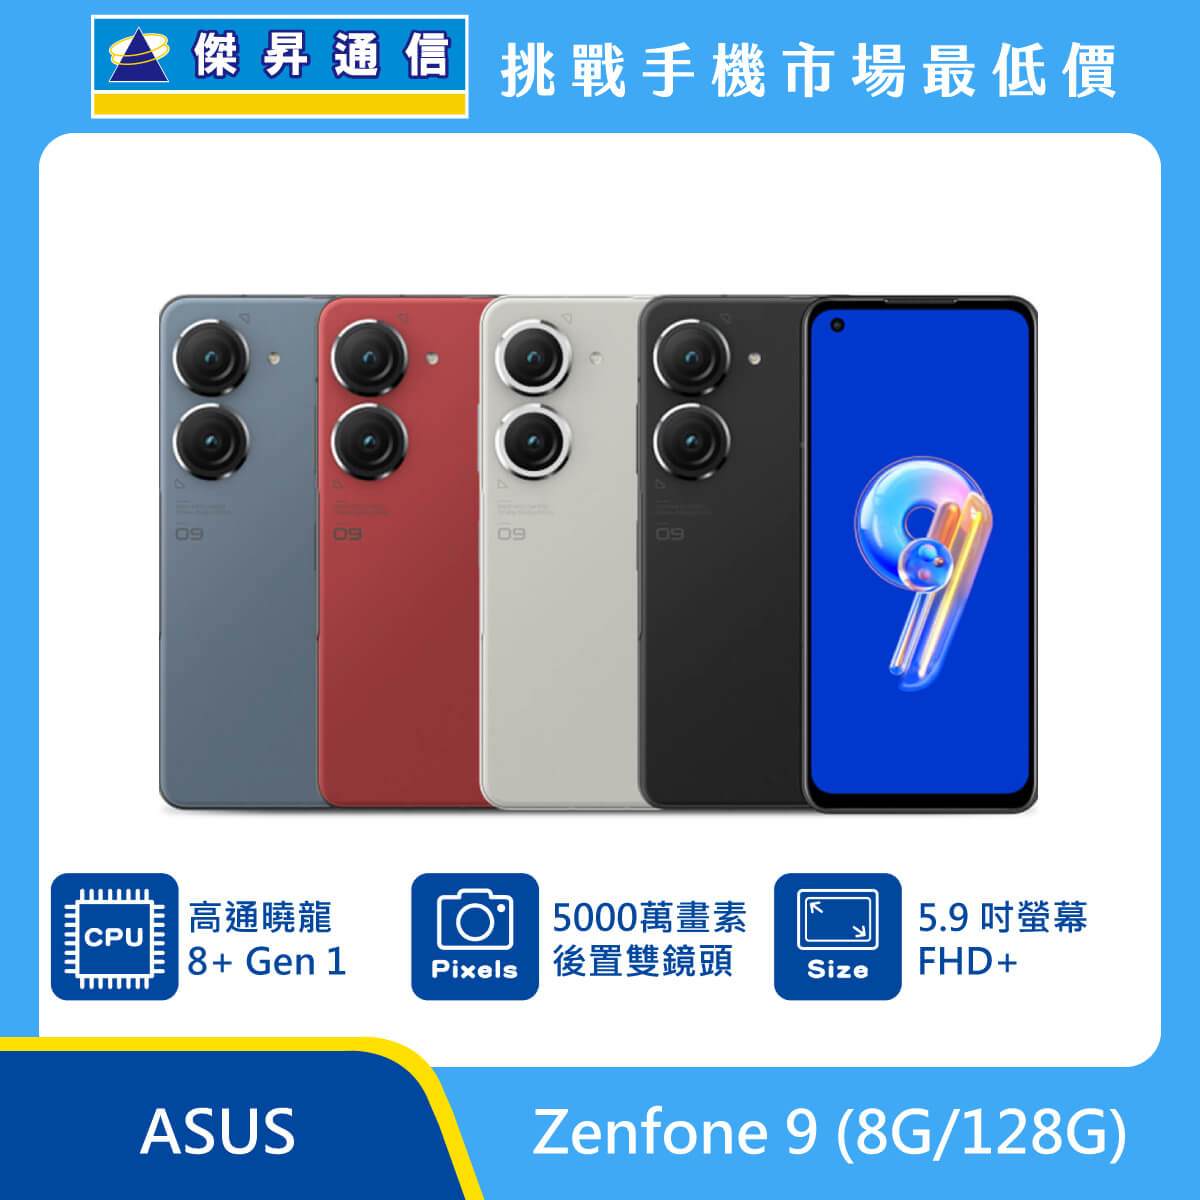 14時までの注文で即日配送 台湾版ASUS Zenfone9 スターリーブルー8GB